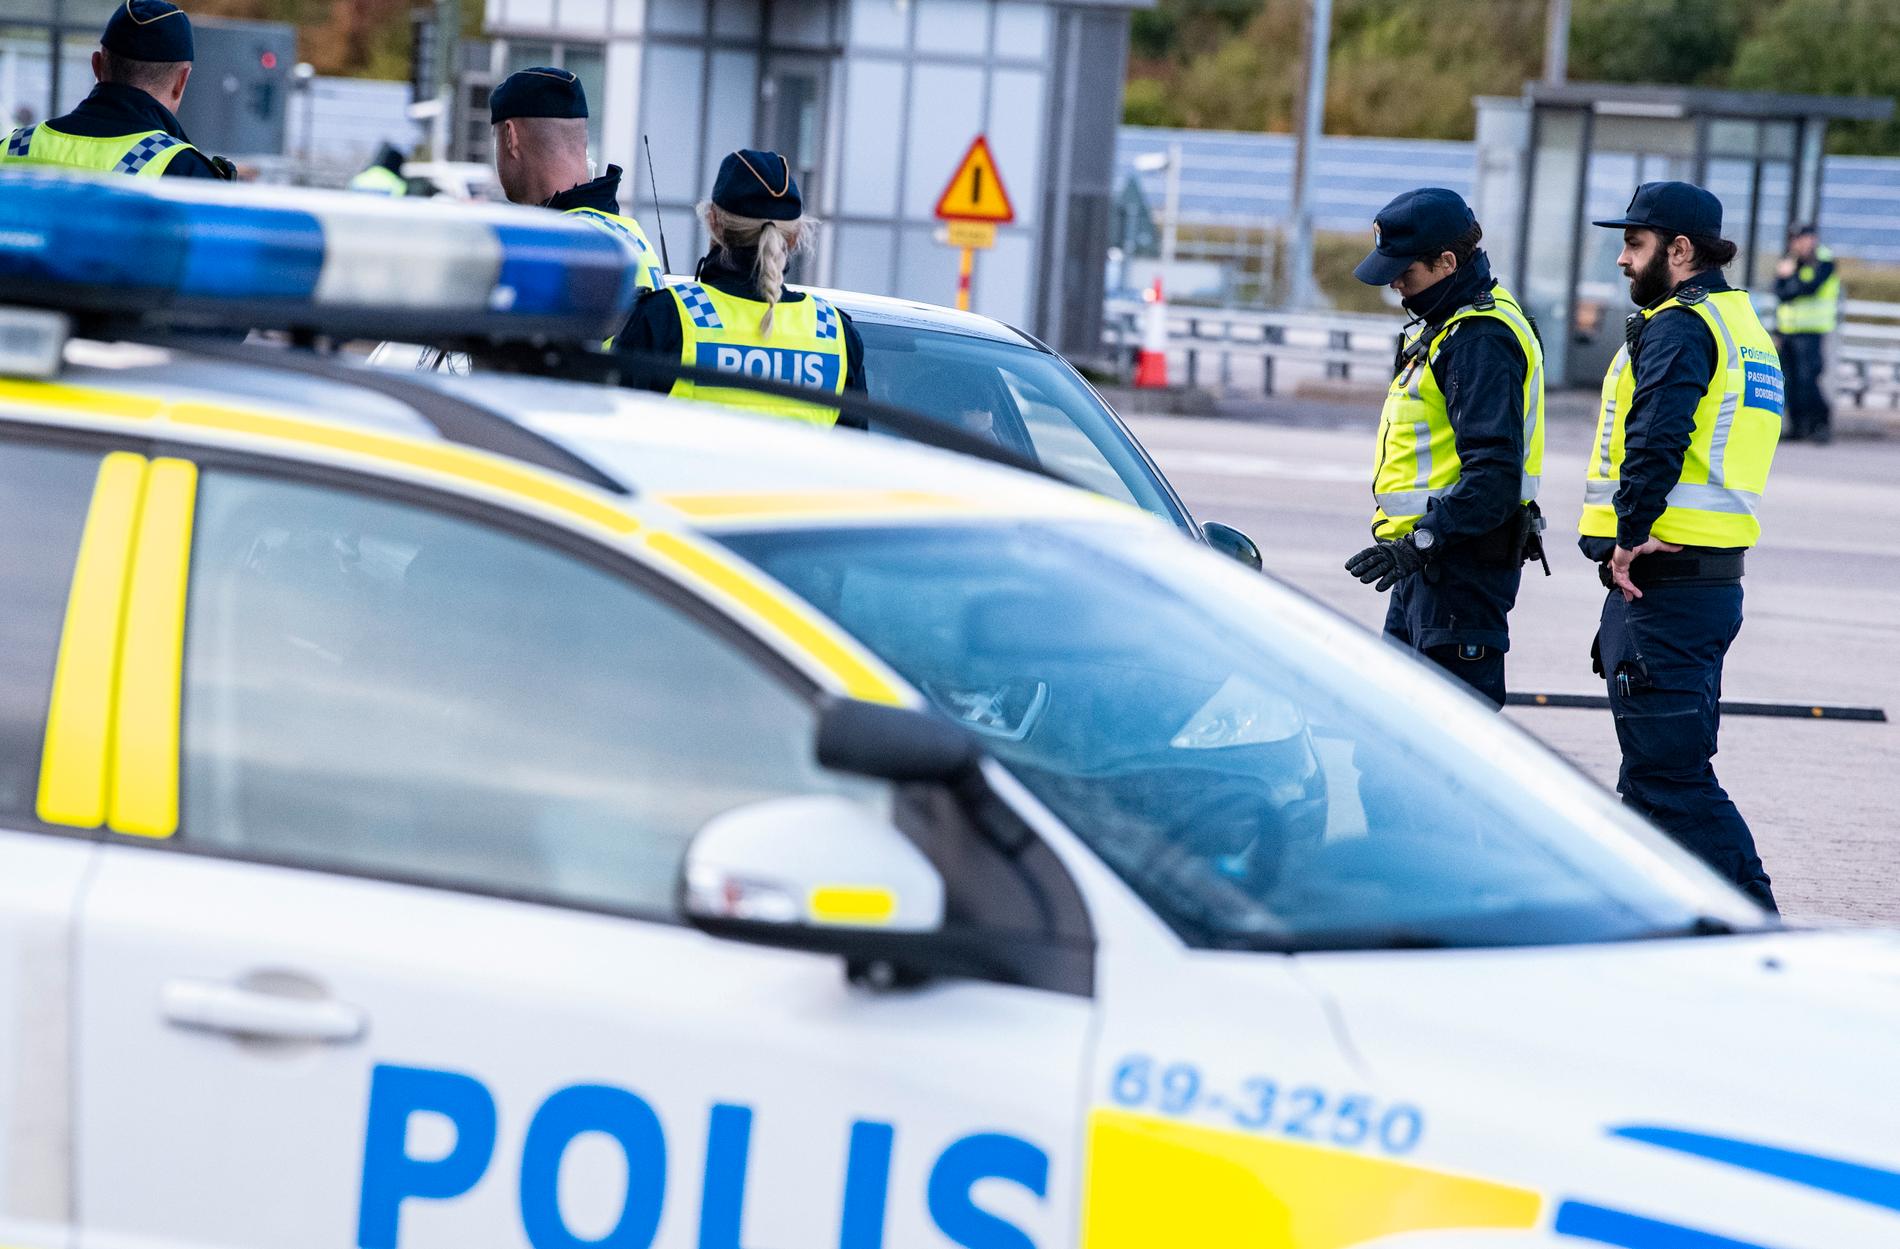 Polis och passkontrollanter genomför id-kontroll Öresundsbrons betalstation på Lernacken. Arkivbild.